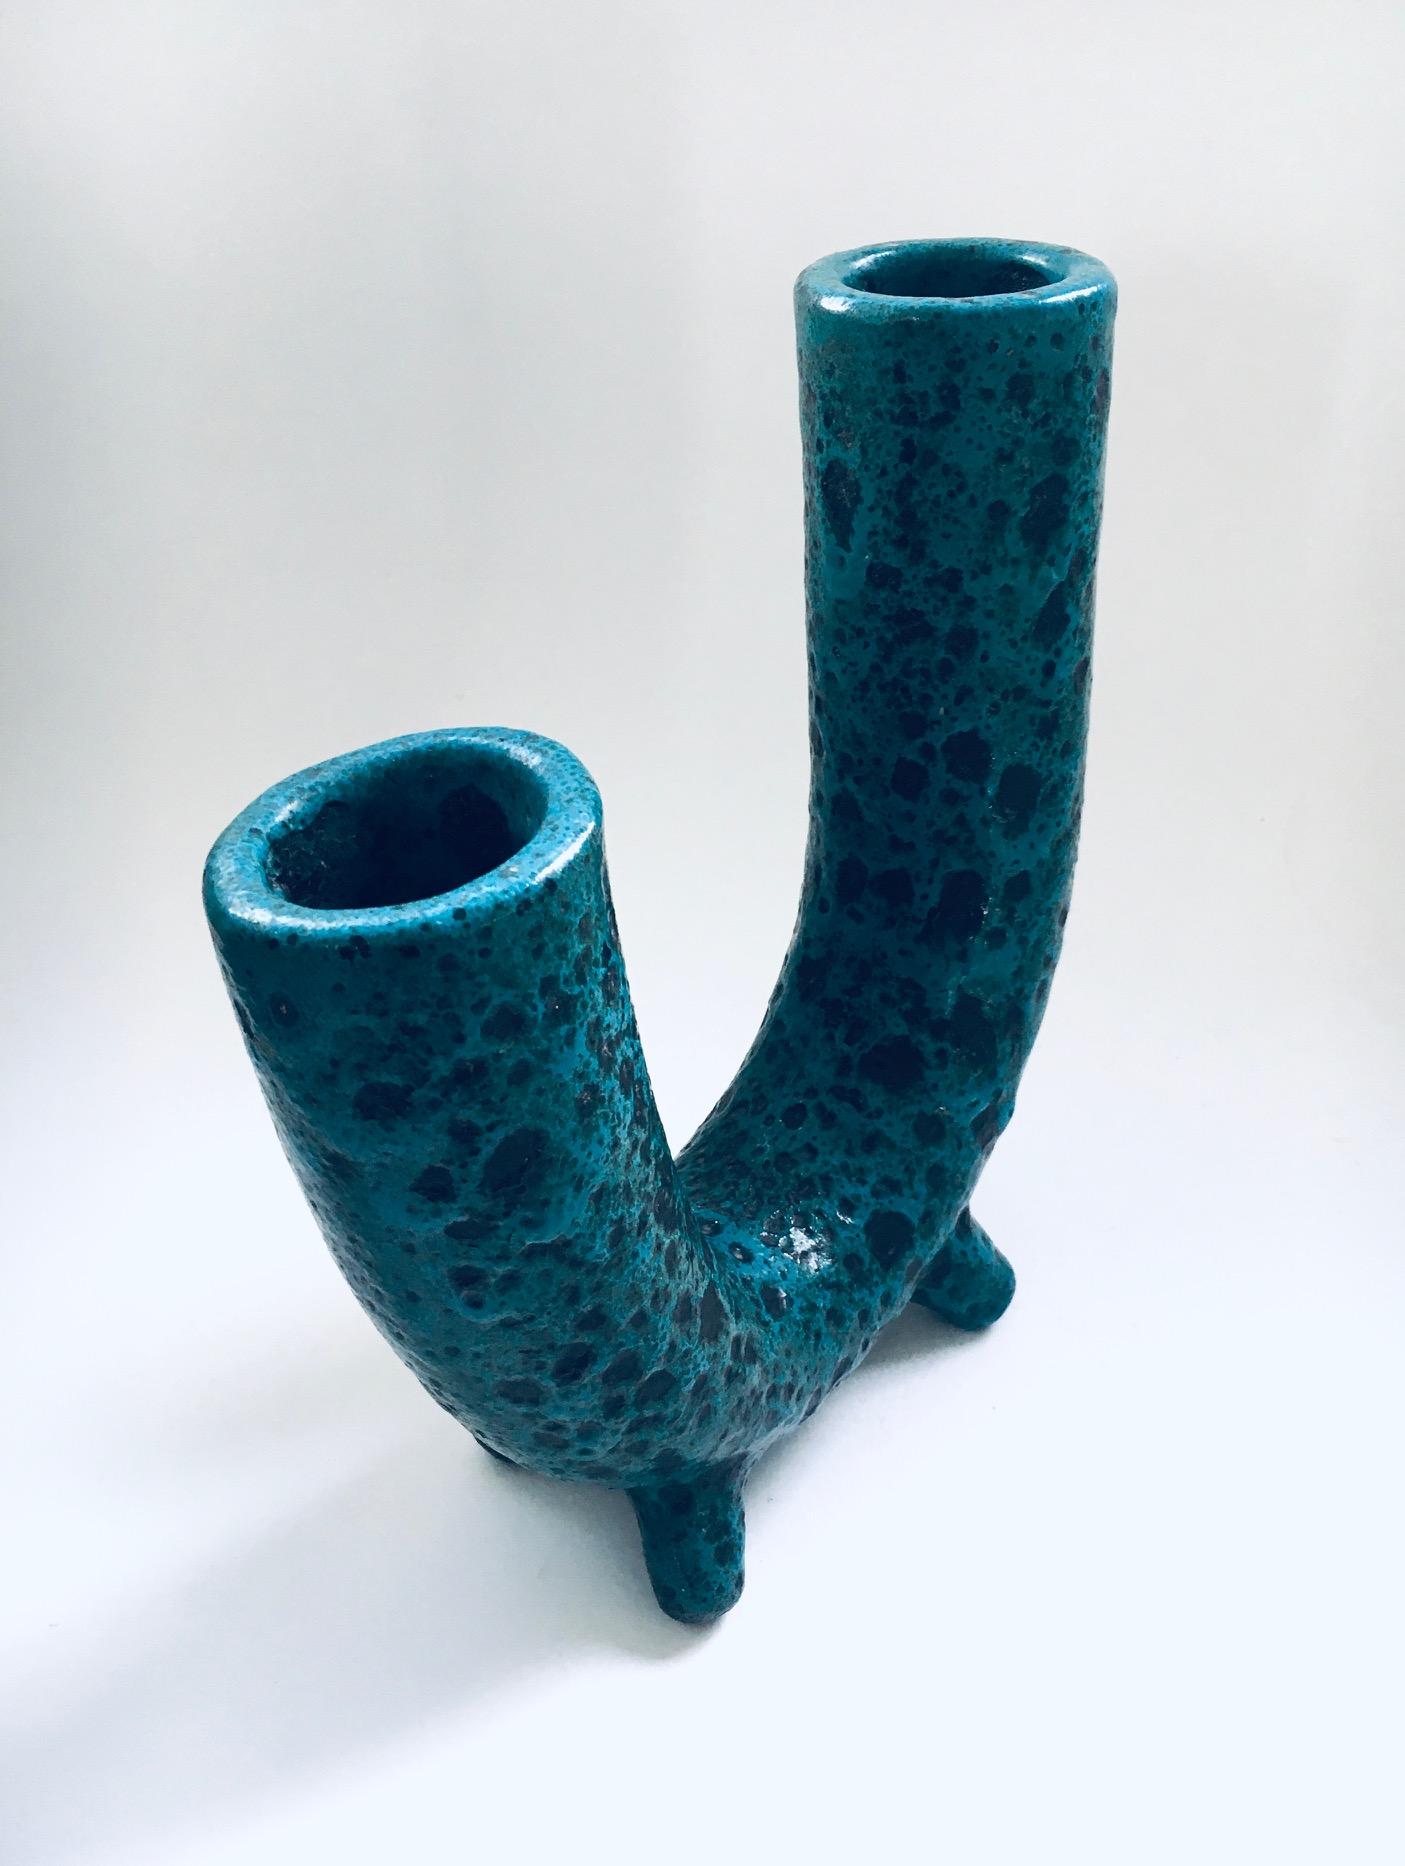 Brutalist Art Pottery Studio Fat Lava Horn Spout Vase, Belgium 1960's For Sale 3